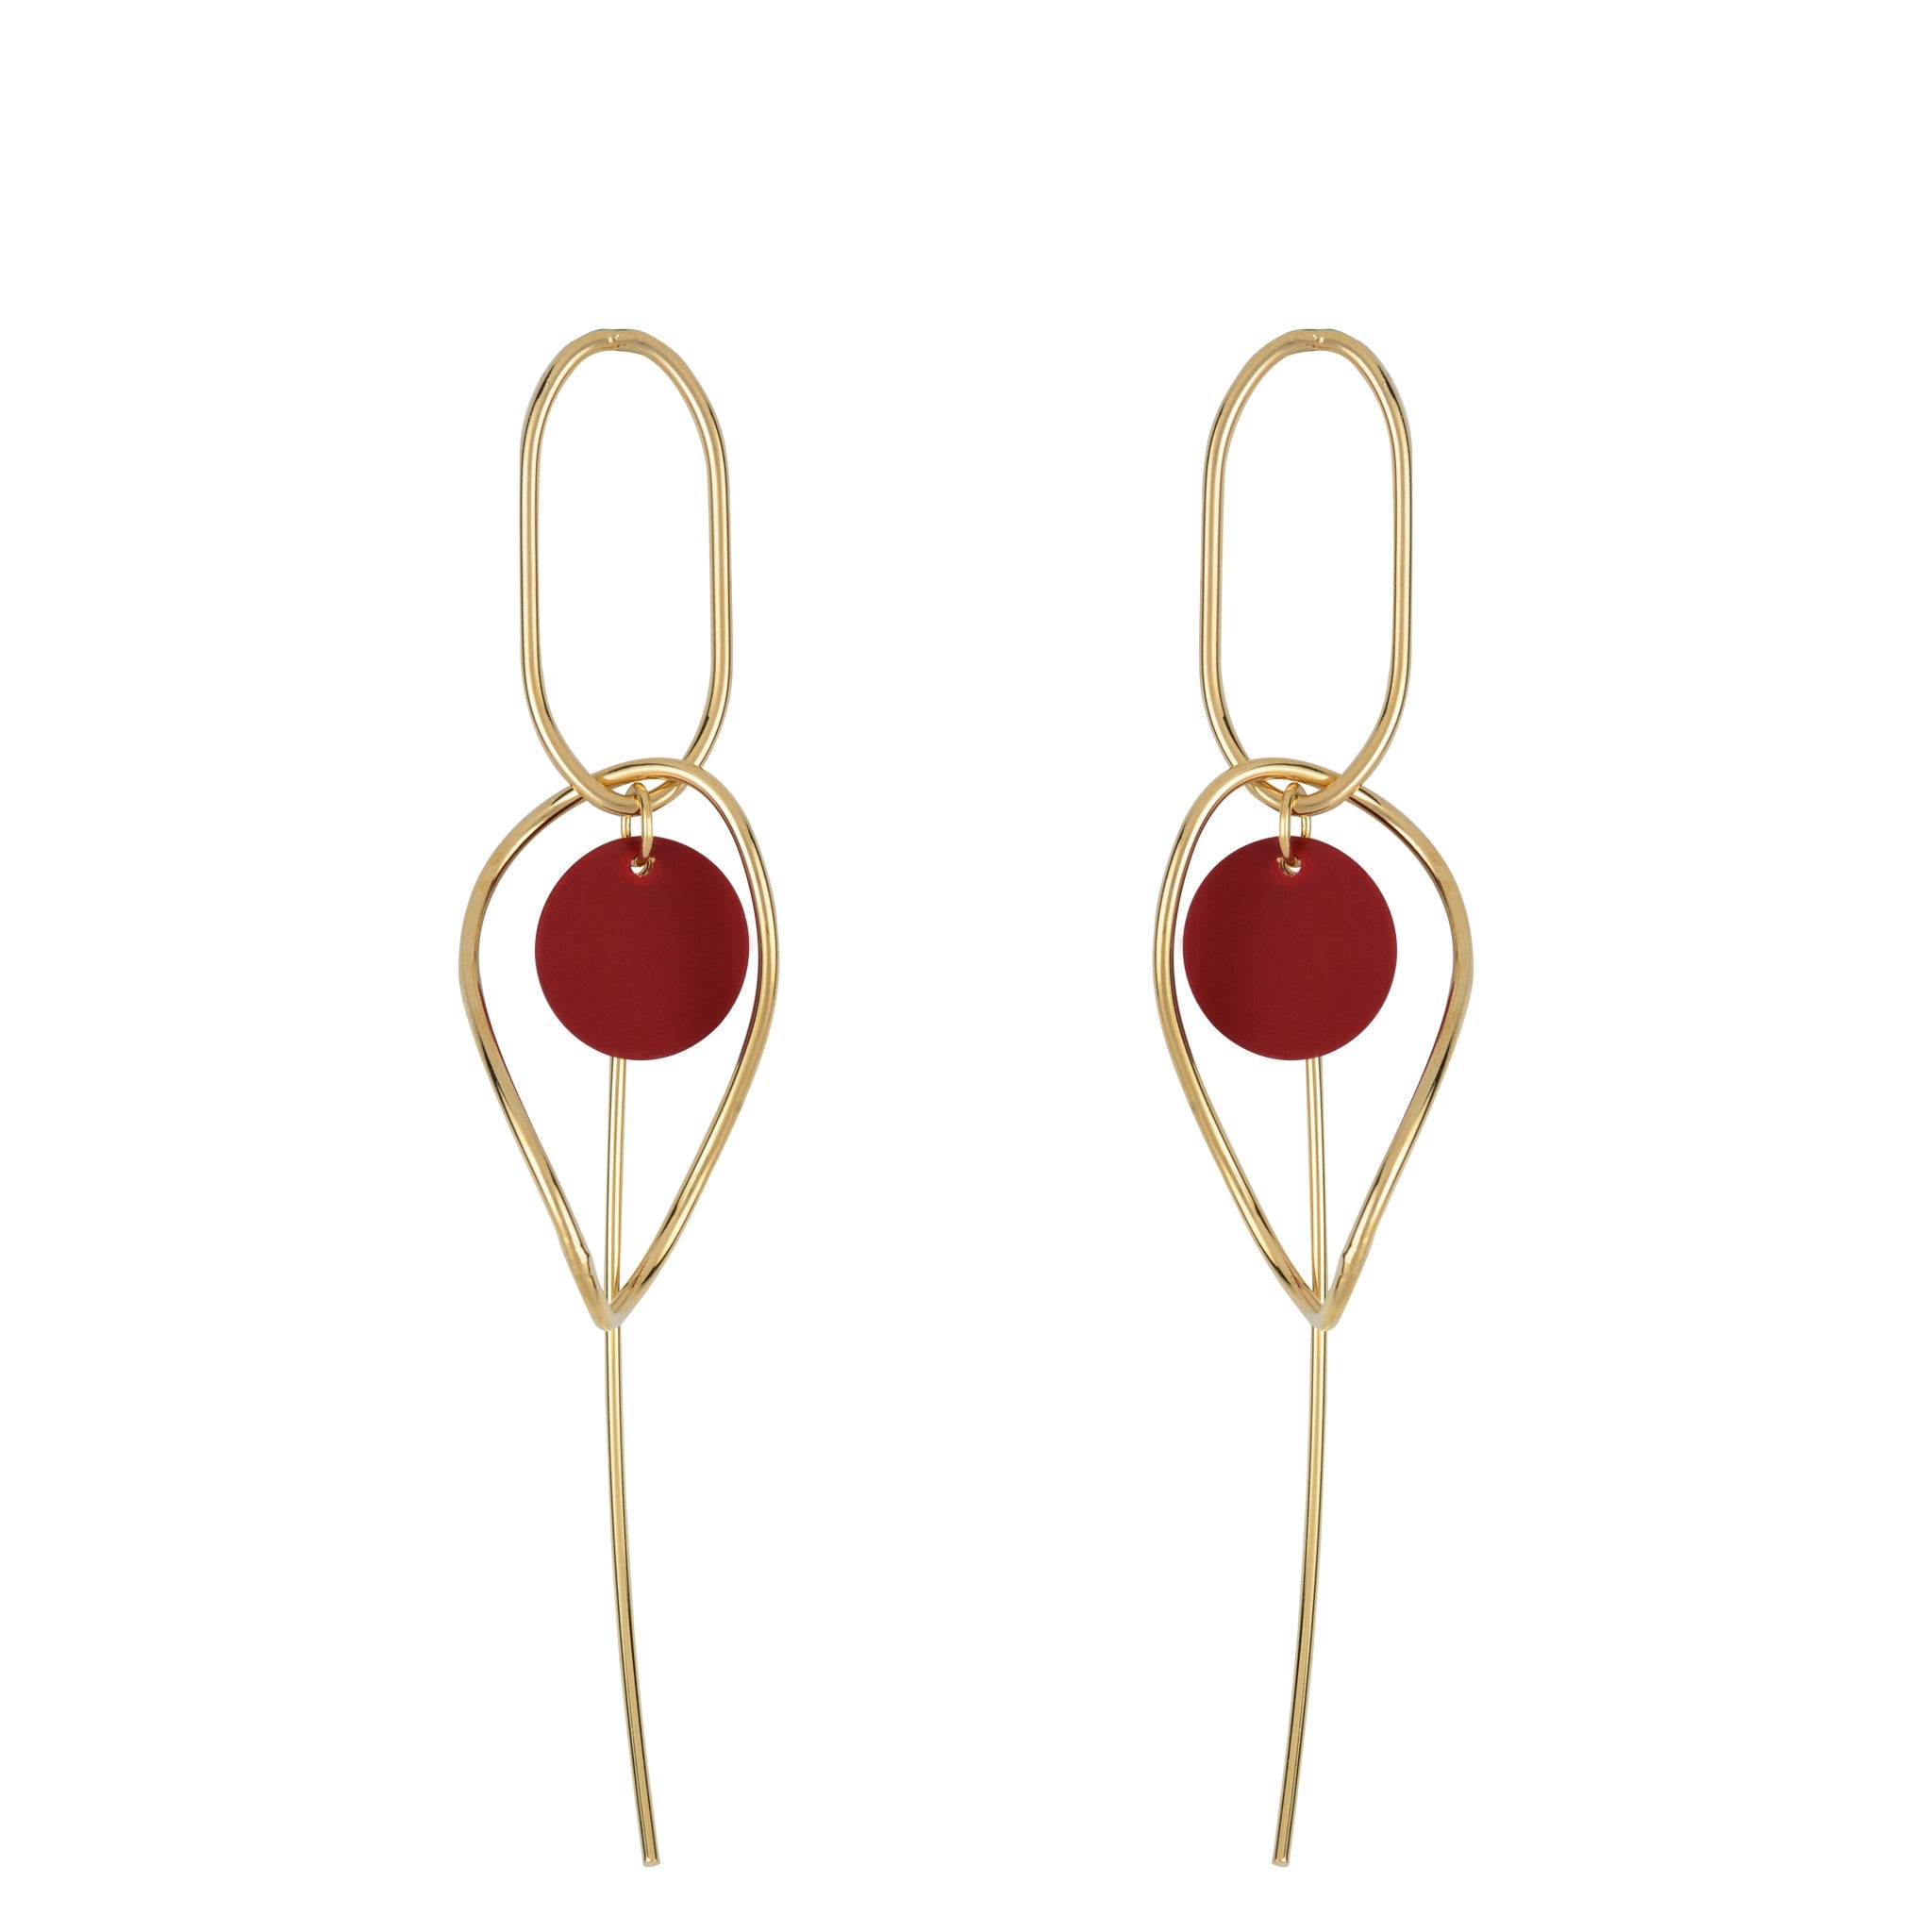 Oval & Pin Earrings - Dark Red